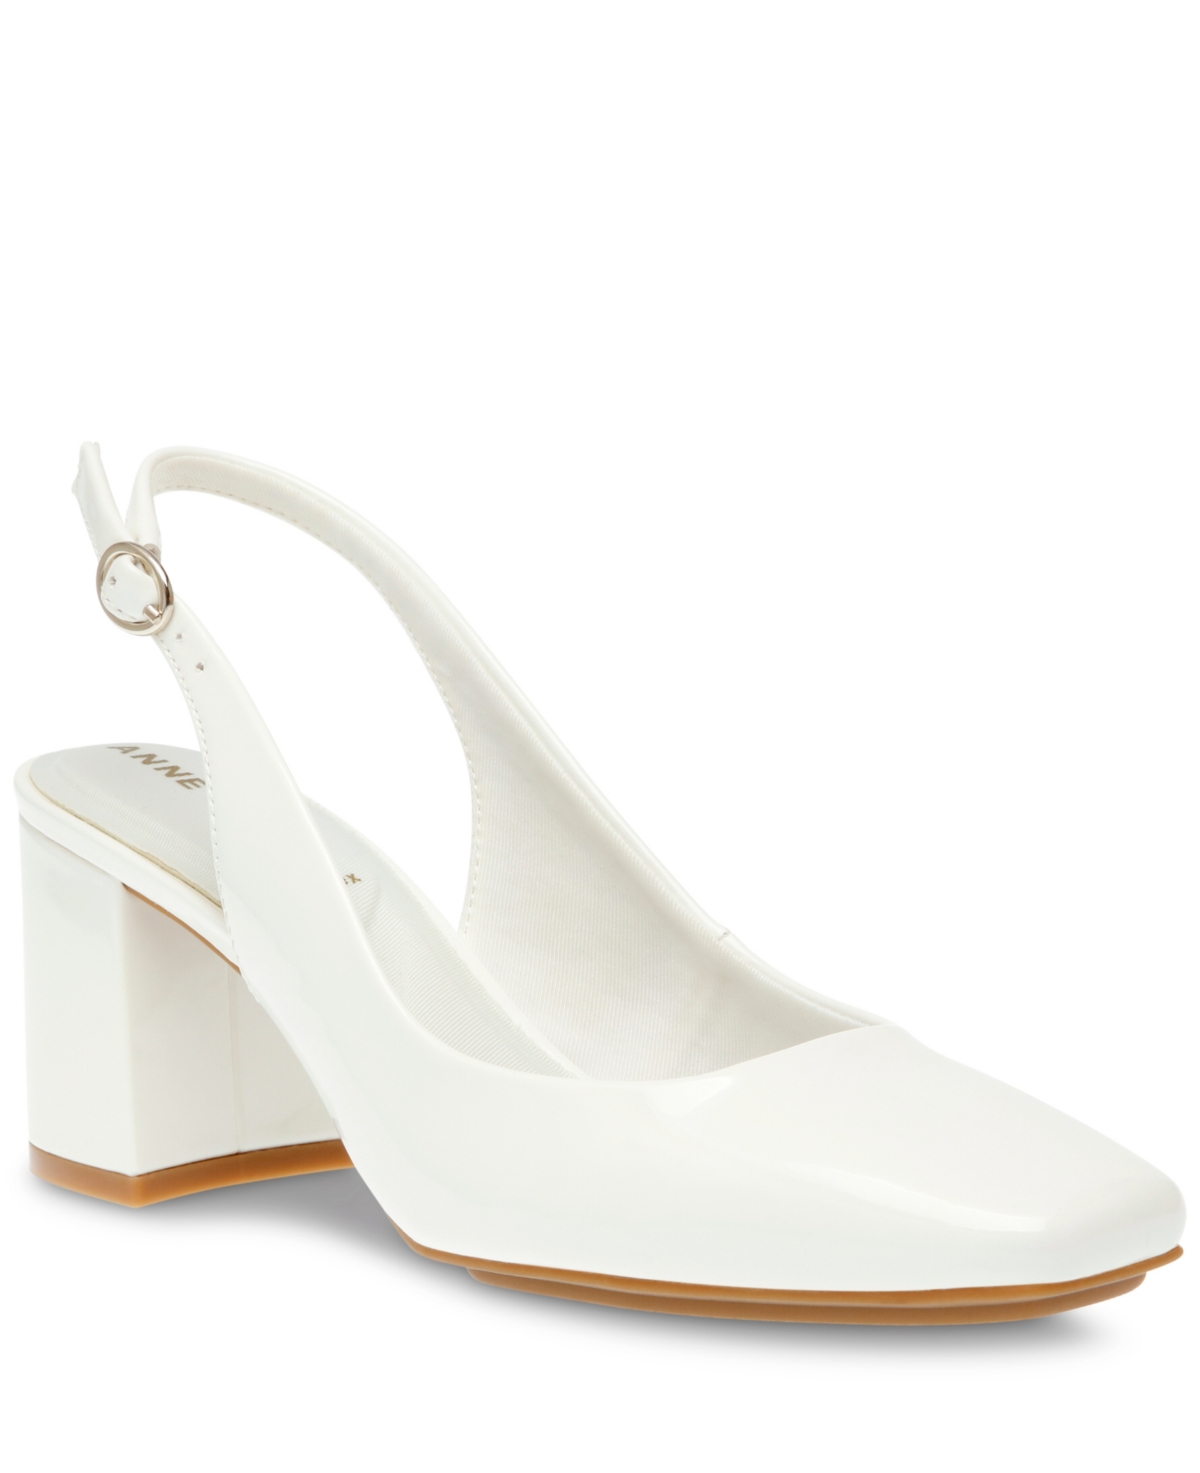 Women's Laney Sling Back Dress Heel Sandals - White Patent